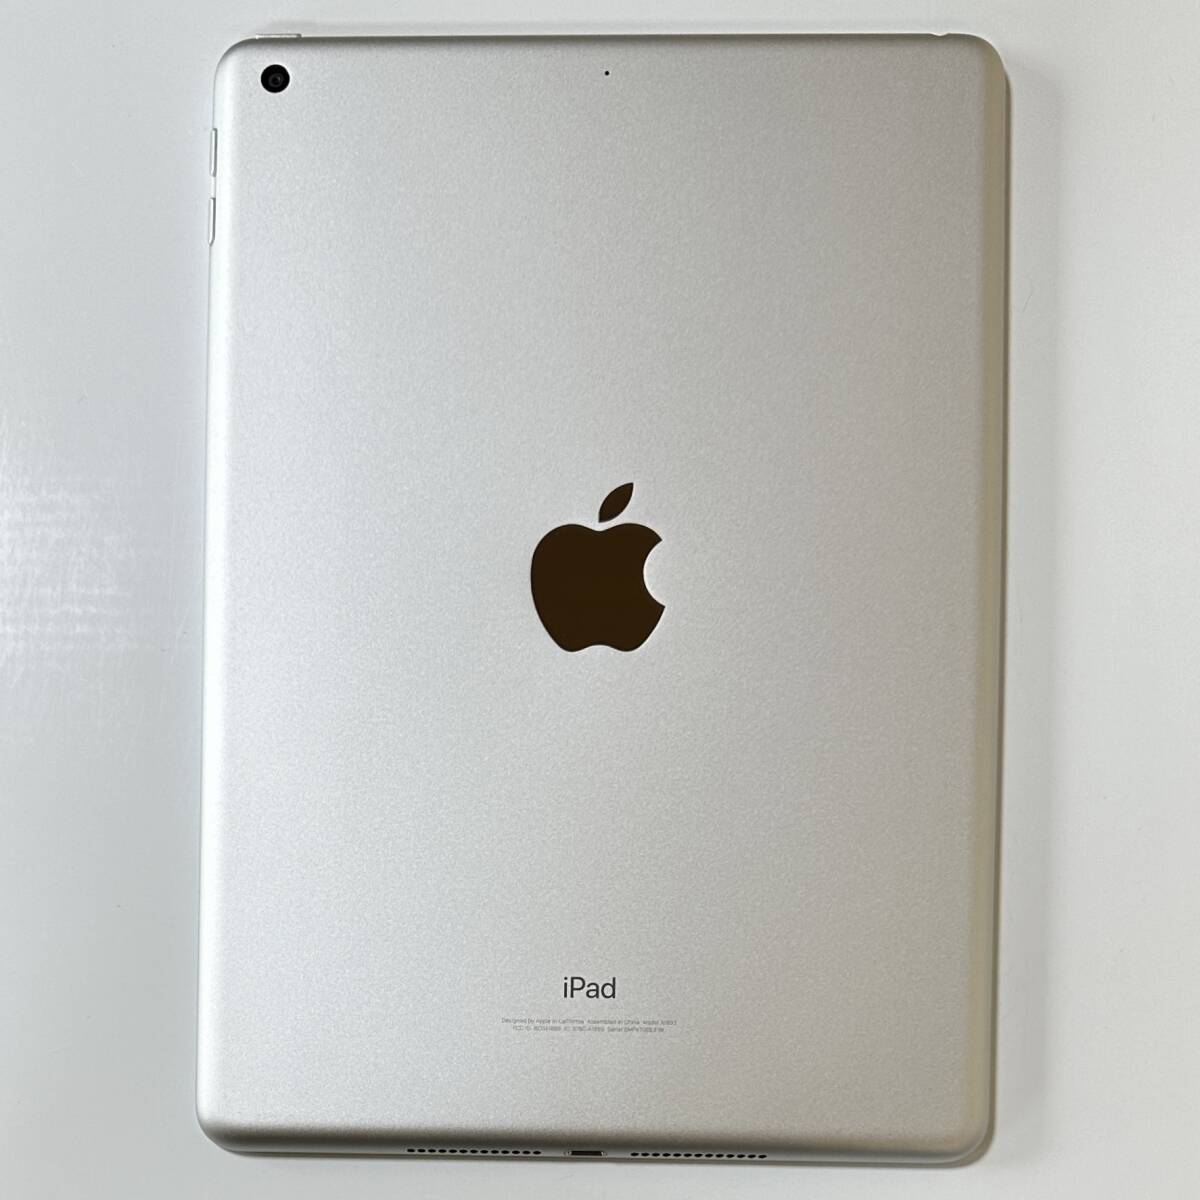 ( прекрасный товар ) Apple iPad ( no. 6 поколение ) серебряный 32GB MR7G2J/A Wi-Fi модель iOS17.4.1 Acty беж .n разблокирован 